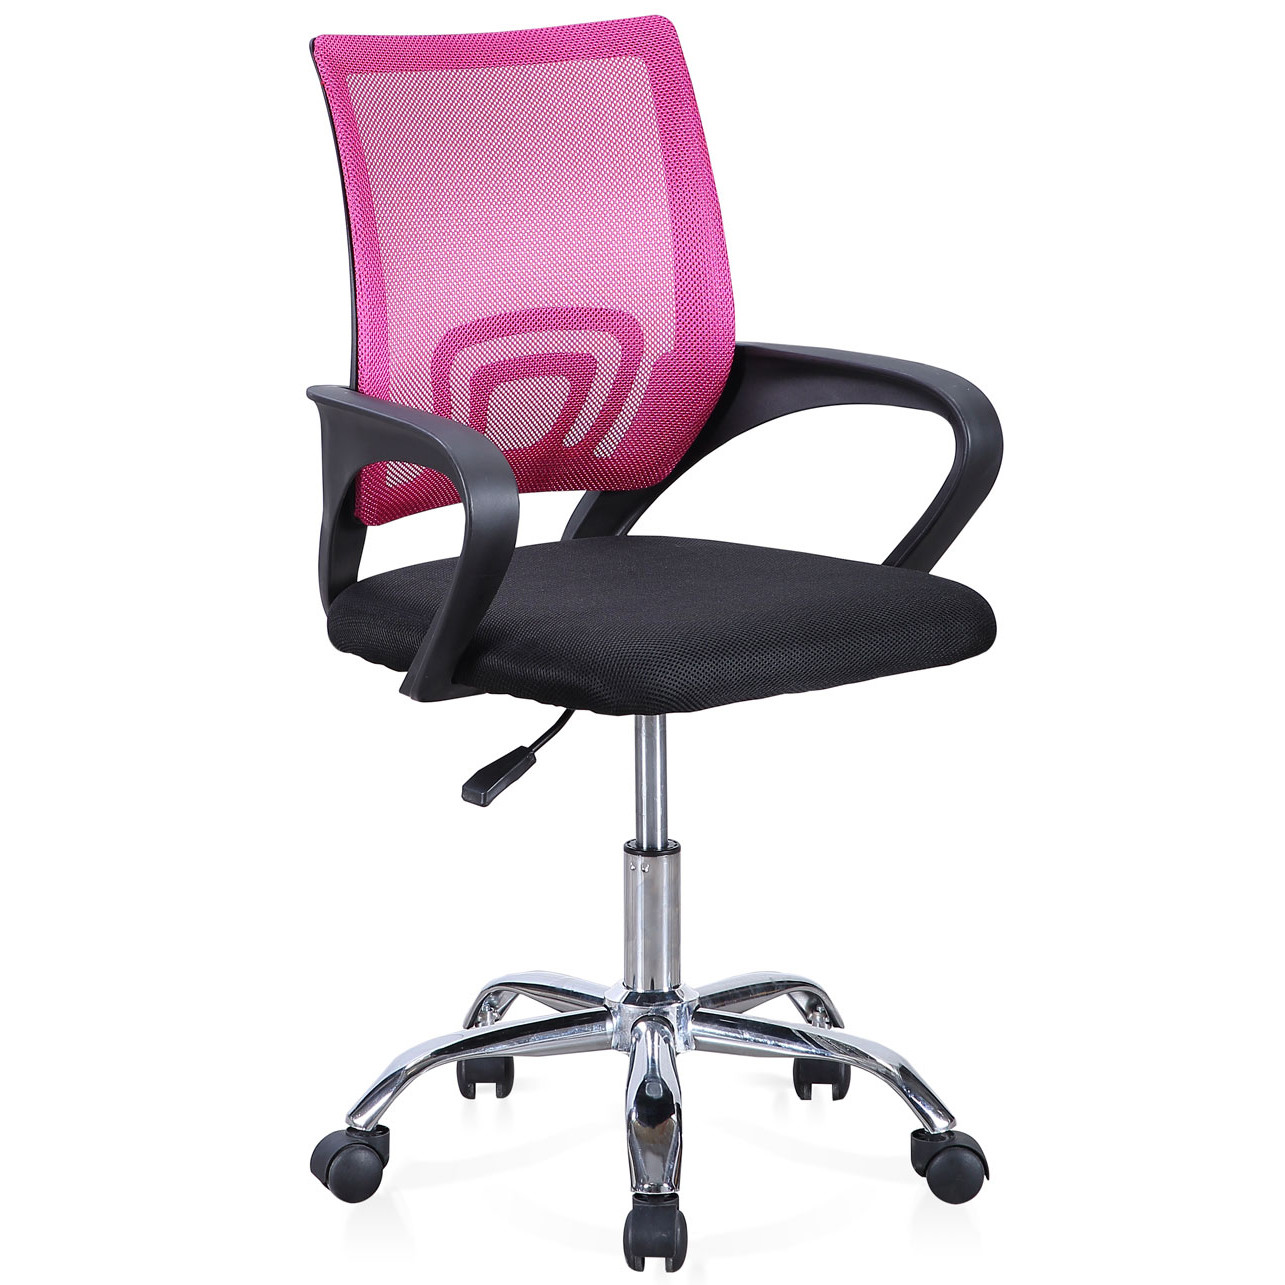 Silla escritorio Gica rosa - Muebles Polque. Tienda de Muebles en Pamplona  y Online.